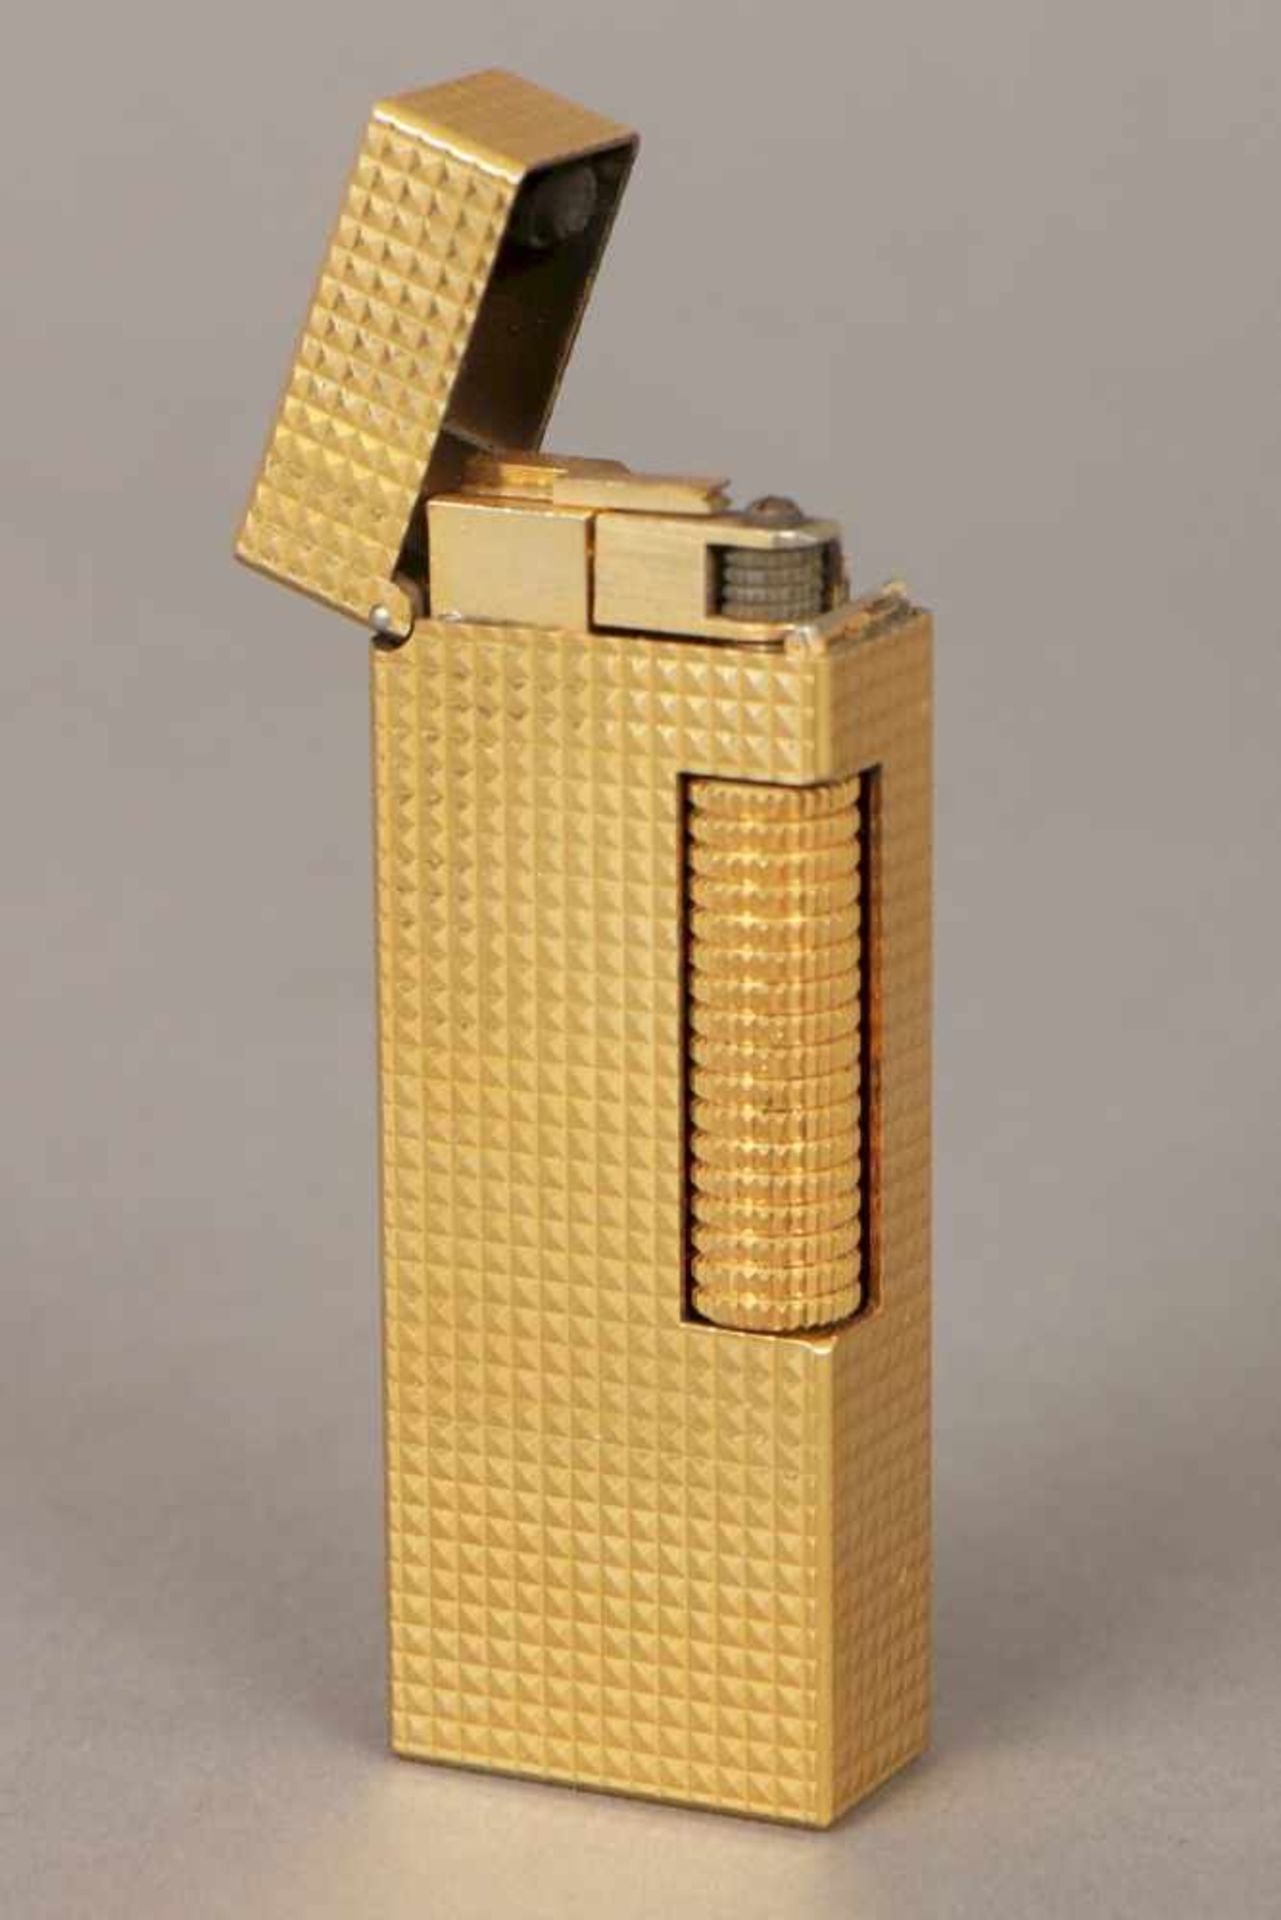 DUNHILL Feuerzeug ¨Rollagas Gold Barley¨vergoldet, hocheckige Form mit feinem, geomtrischem Dekor (